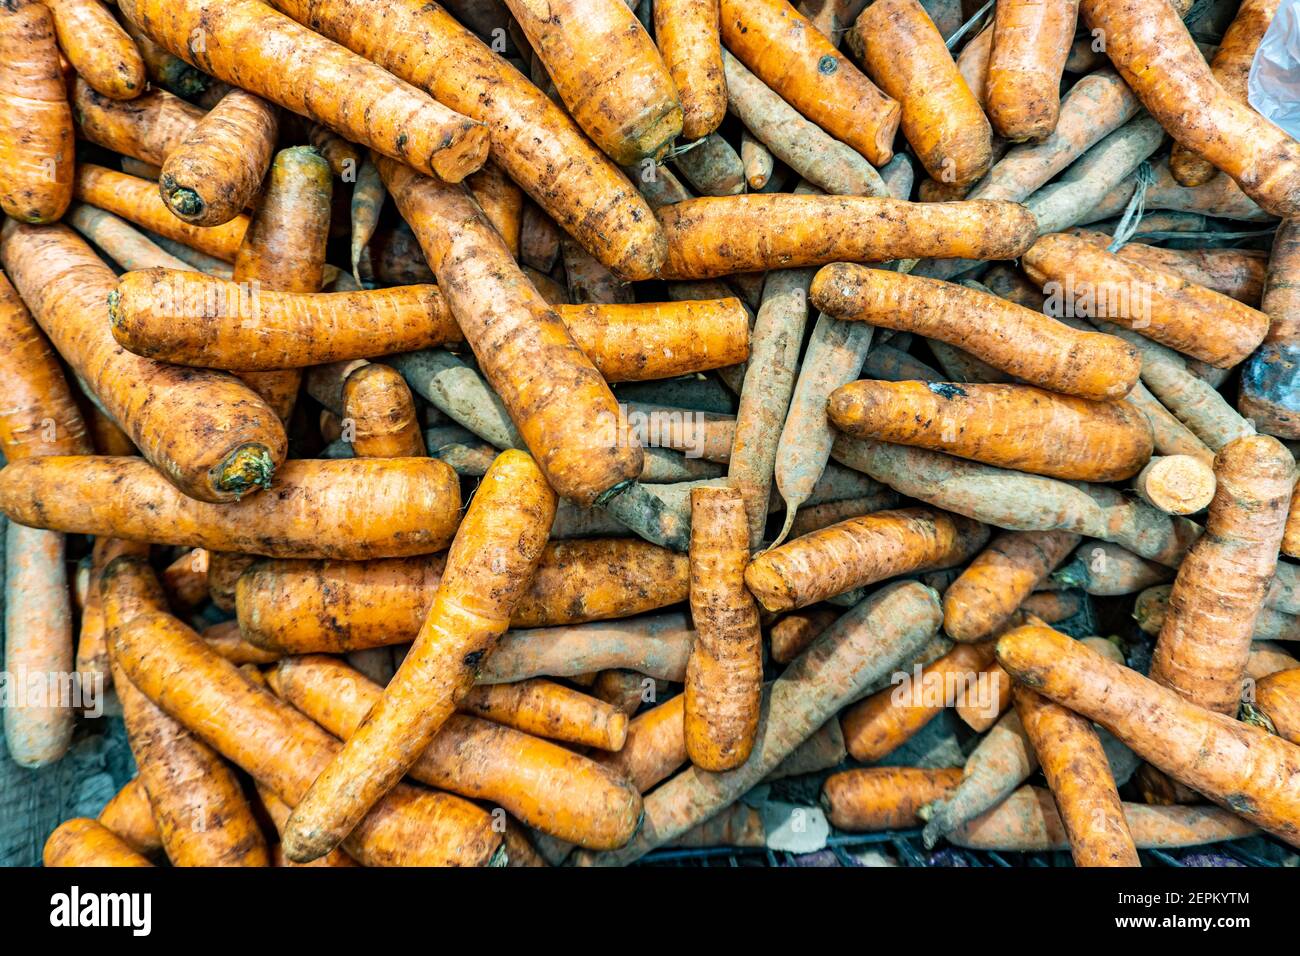 Frische Karotten auf der Theke eines Lebensmittelladens im Supermarkt. Schmutzige Karotten im Laden. Karotten im Regal des Supermarkts. Konzept der gesunden Ernährung Stockfoto